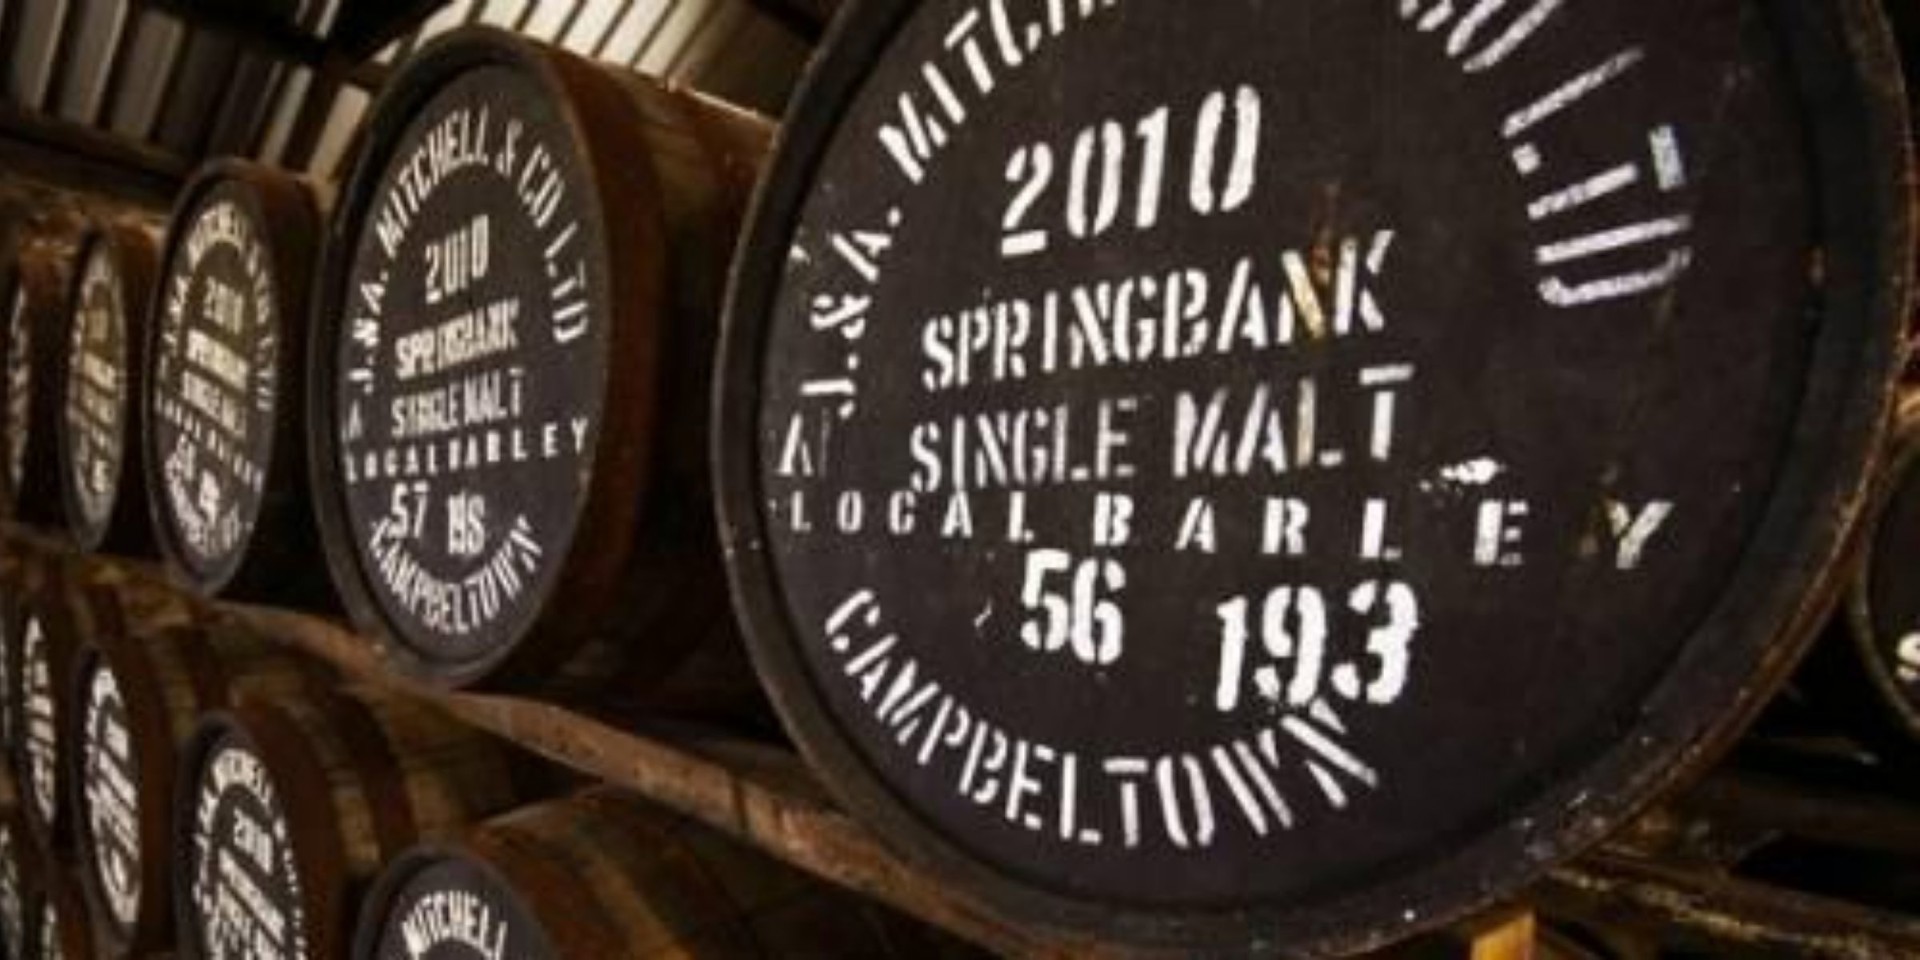 Background image - Springbank Whisky Casks